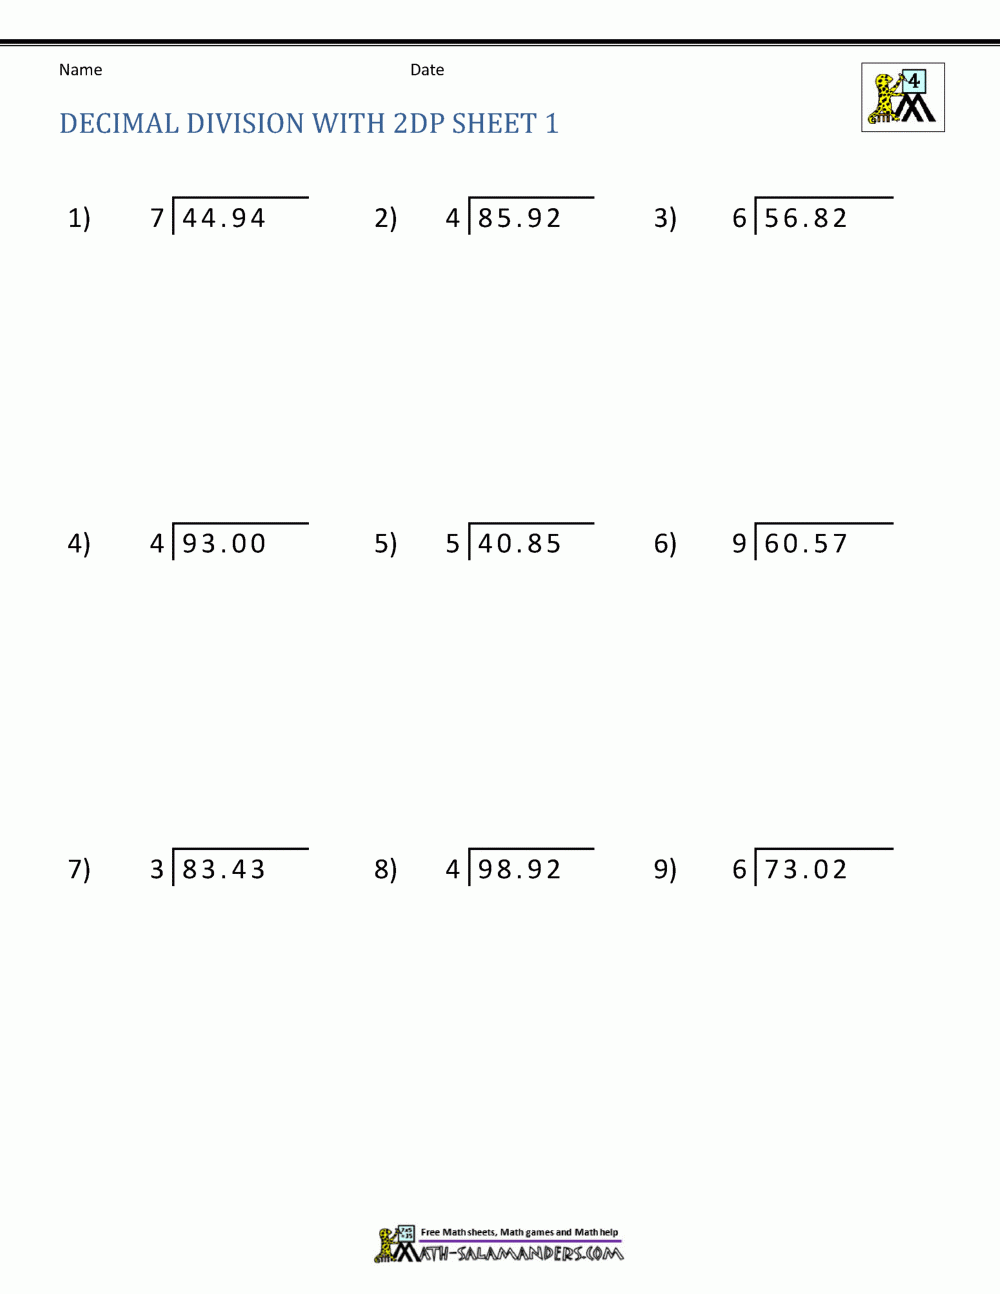 long-division-of-numbers-worksheet-kuta-long-division-worksheets